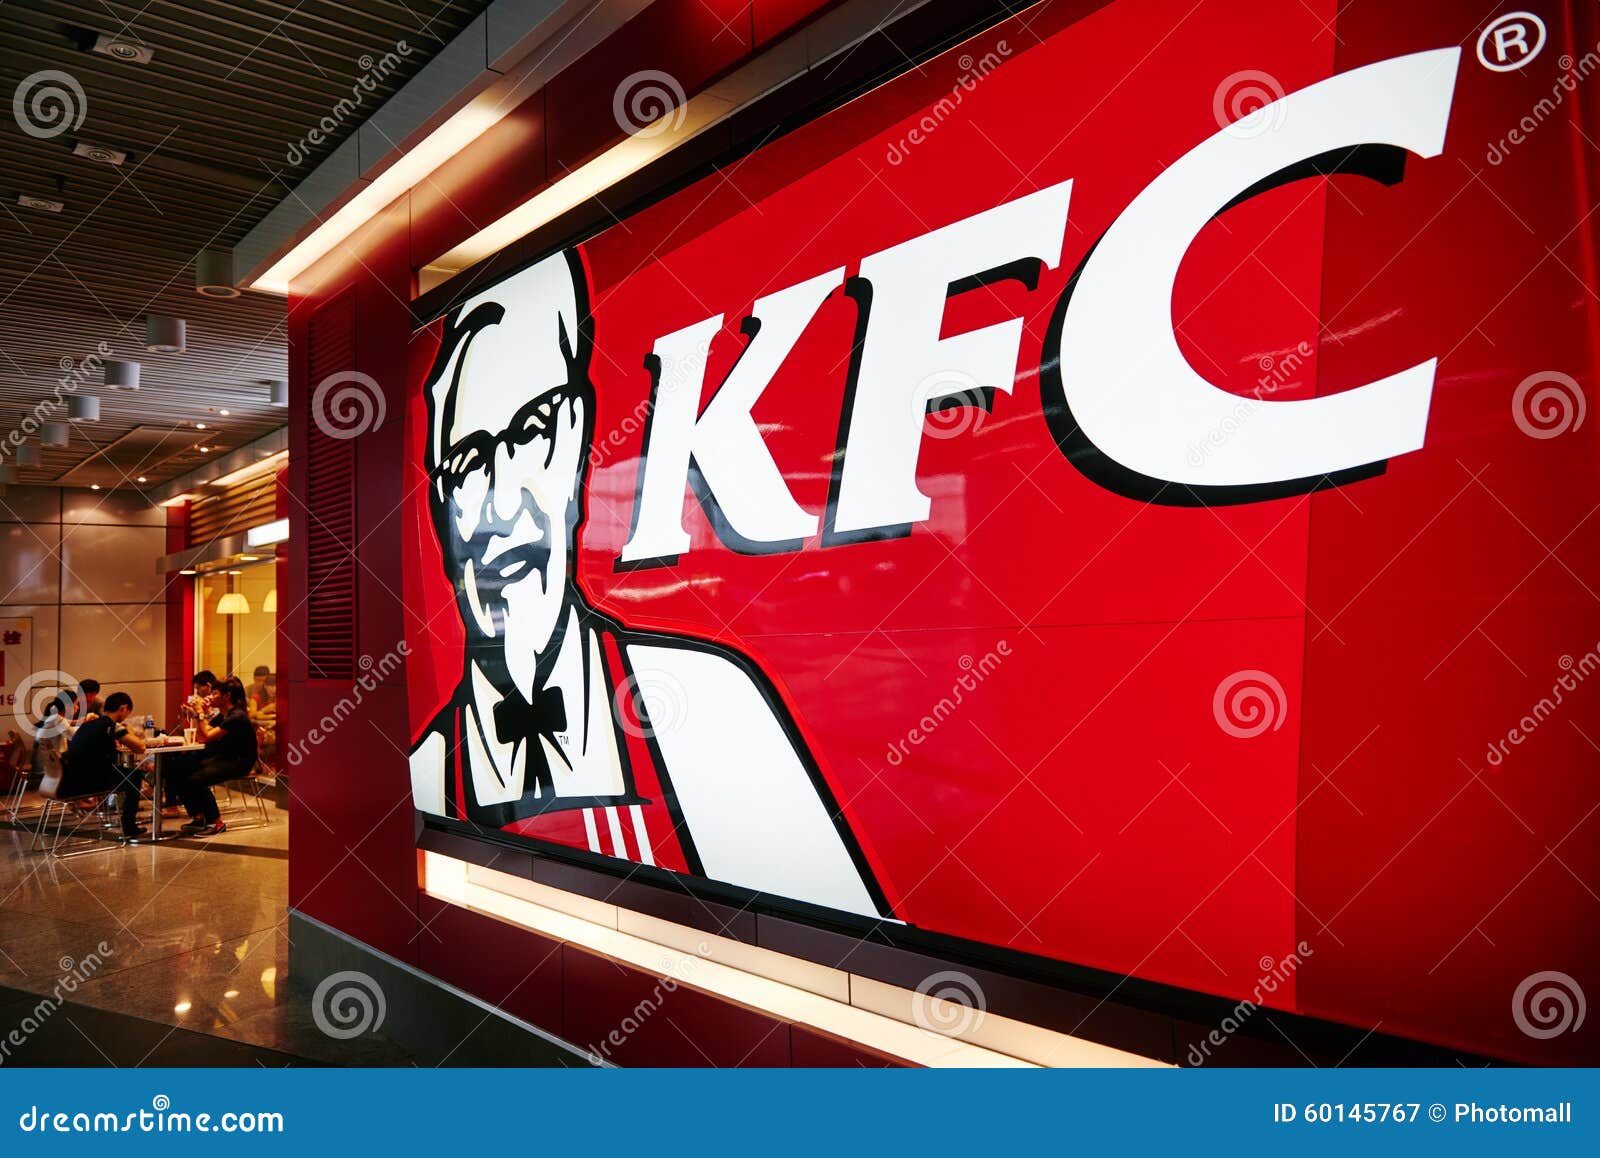 Kfc logo. Kfc Kentucky Fried Chicken, den globala snabbmatkedjan, logo och undertecknar stilsorten av shoppar in